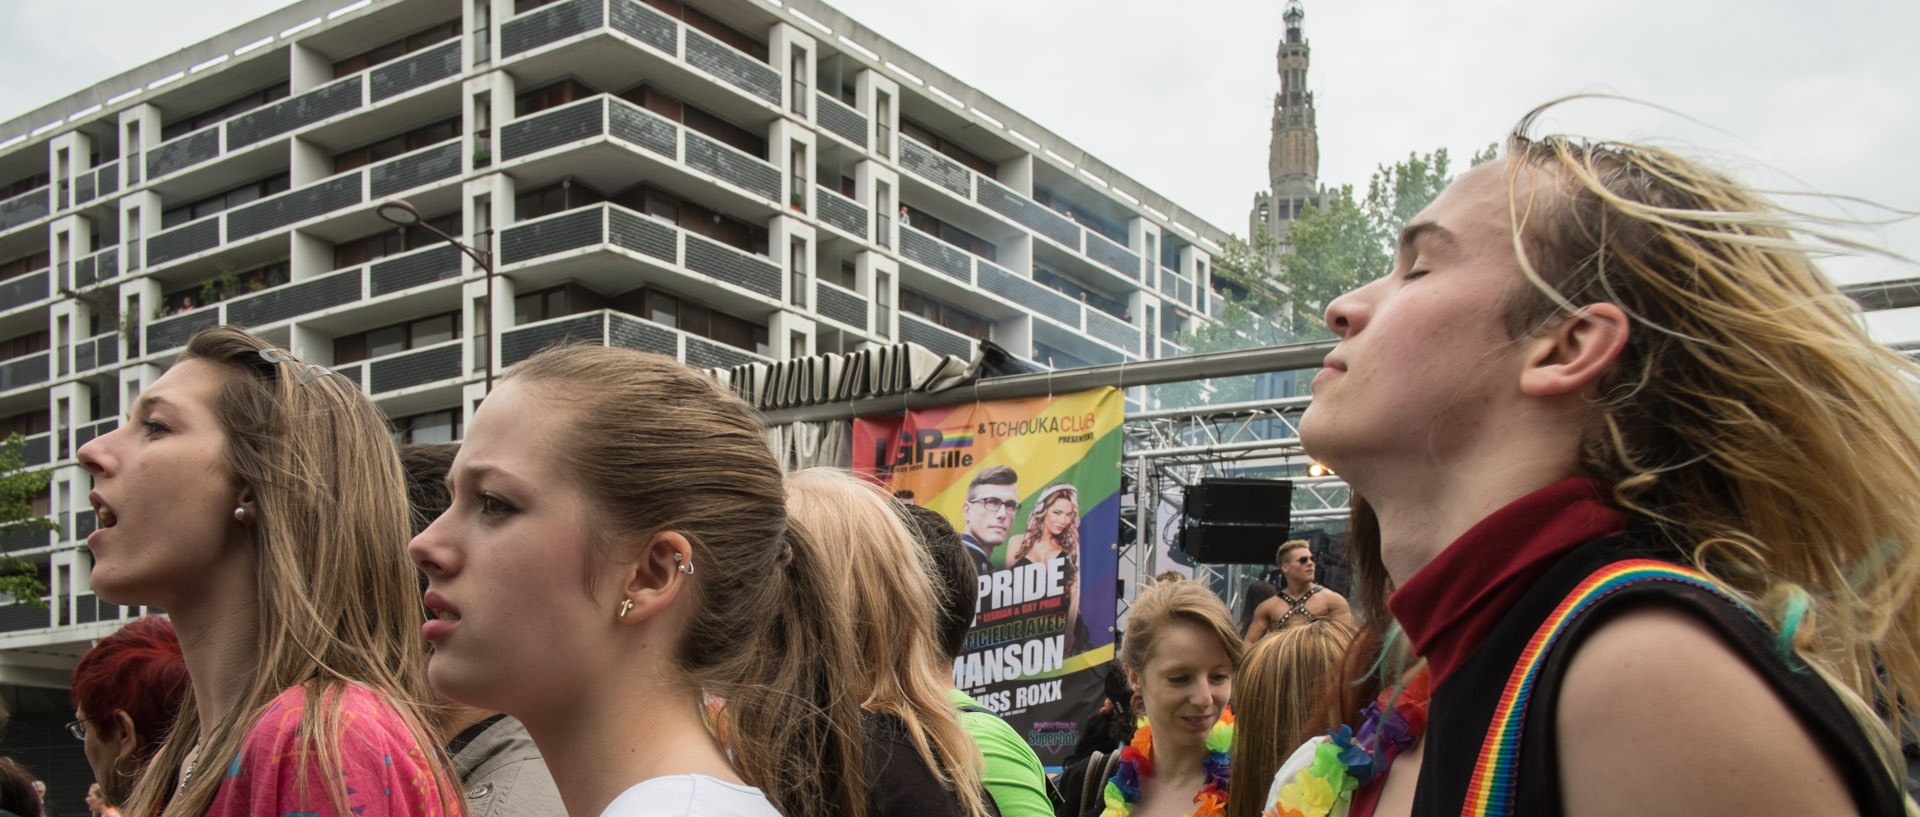 Samedi 1er juin 2013, 15:19, défilé de la lesbian et gay pride, rue de Paris, Lille